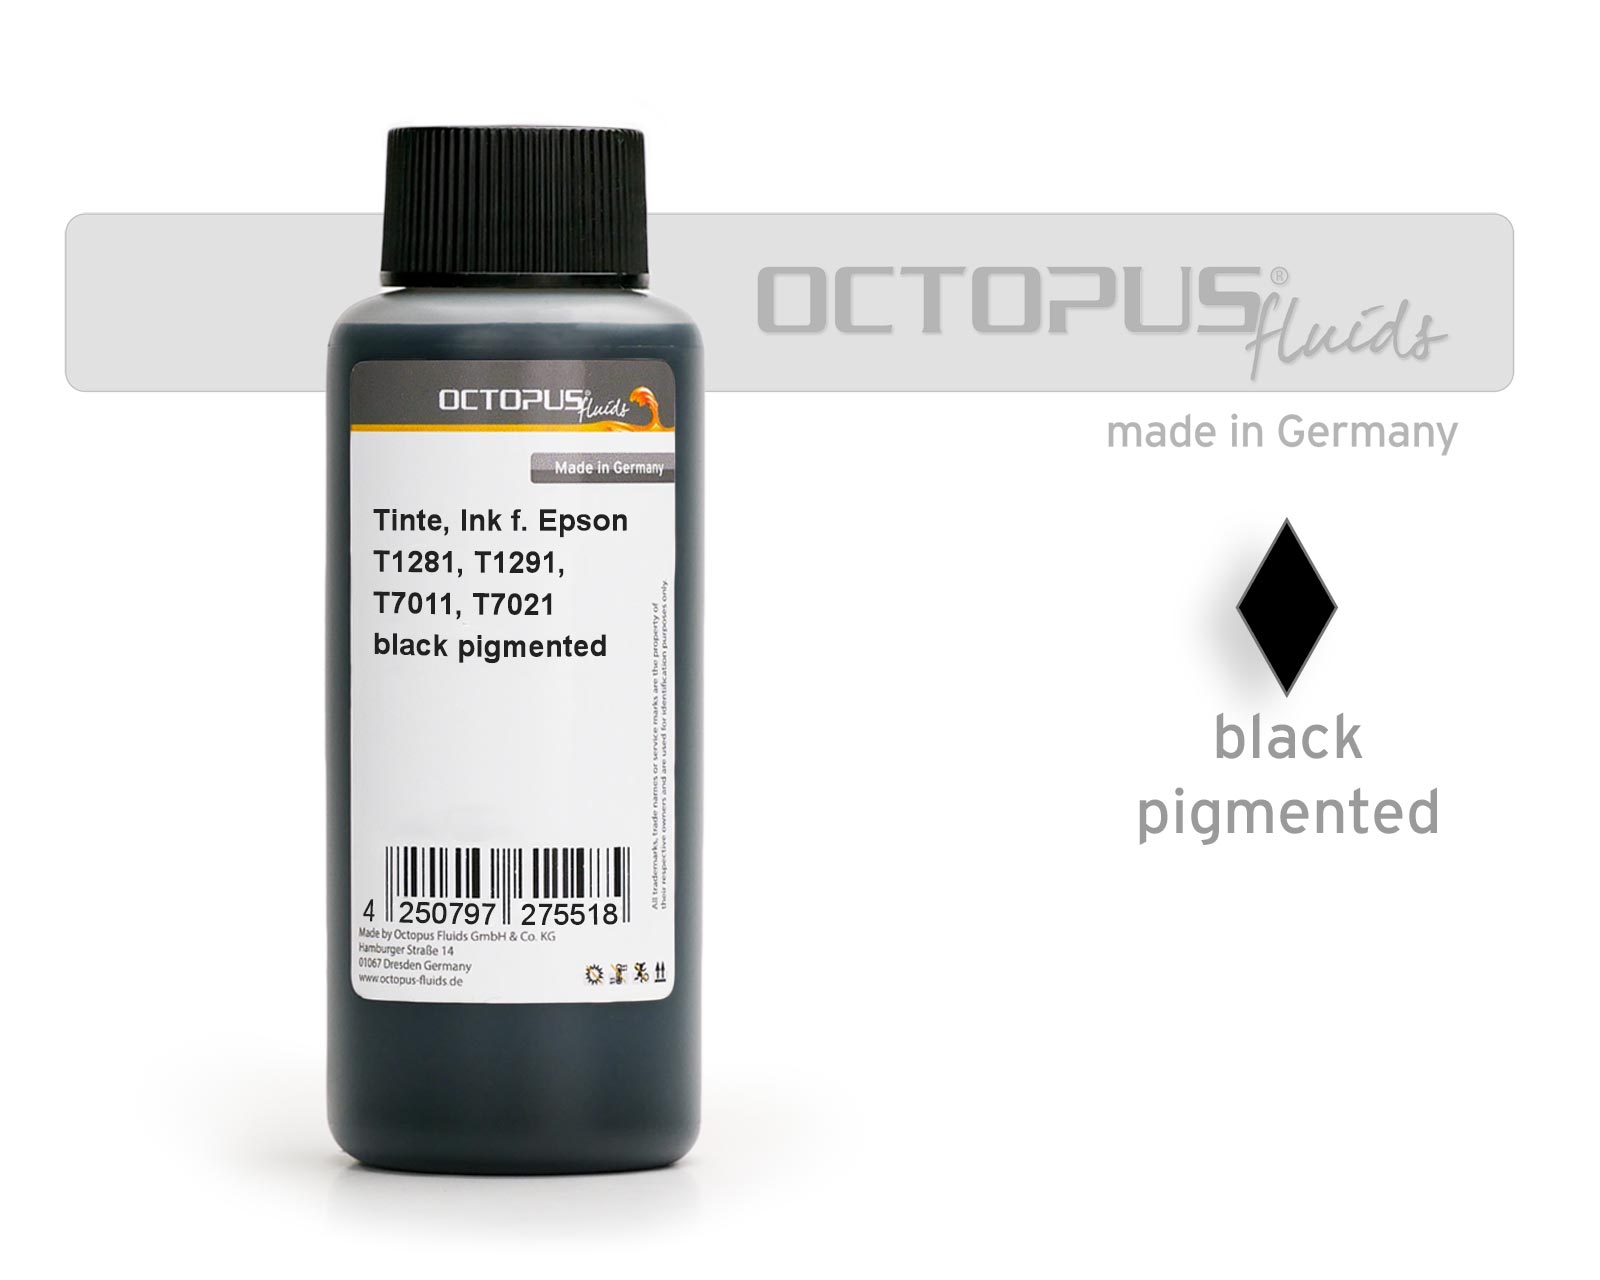 Octopus Druckertinte für Epson T1281, T1291, T7011, T7021 schwarz pigmentiert